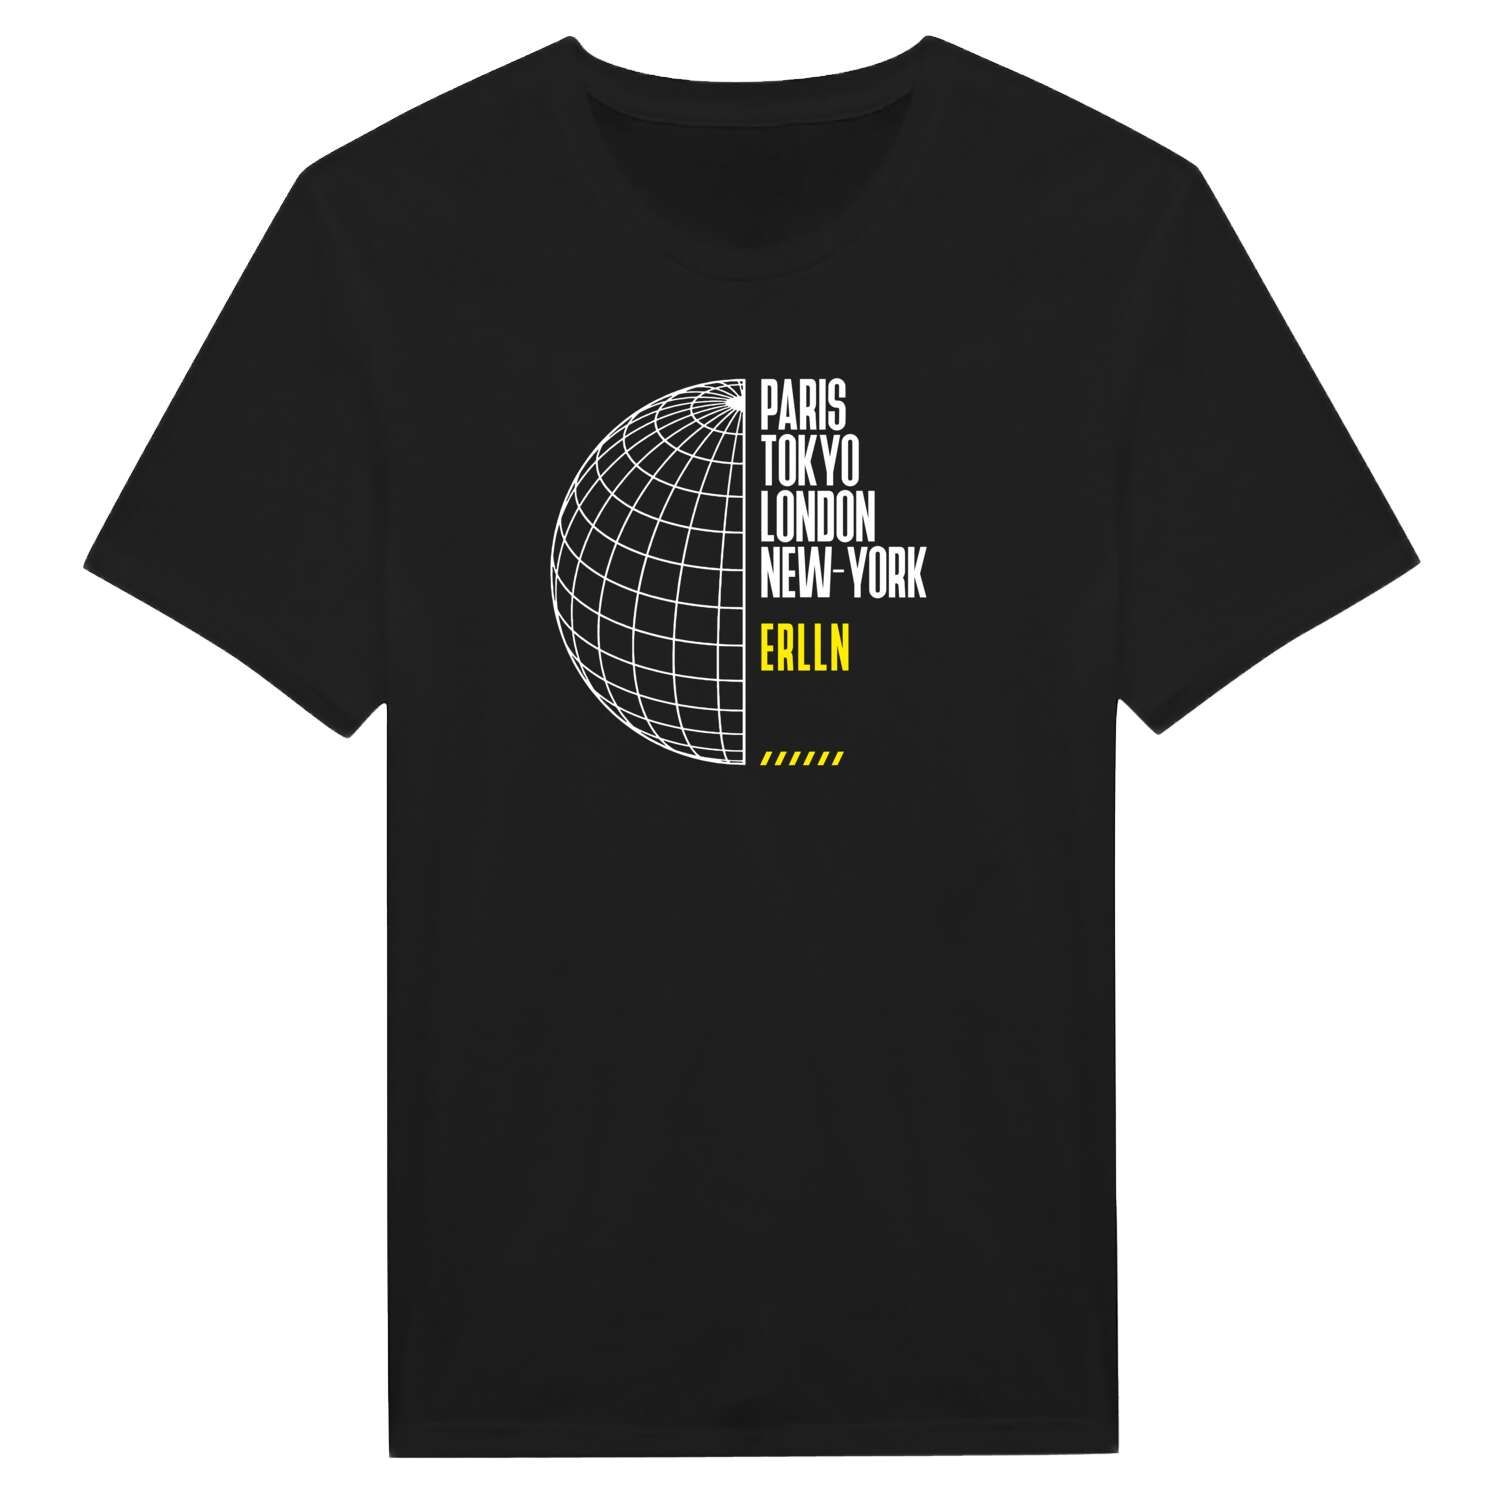 Erlln T-Shirt »Paris Tokyo London«